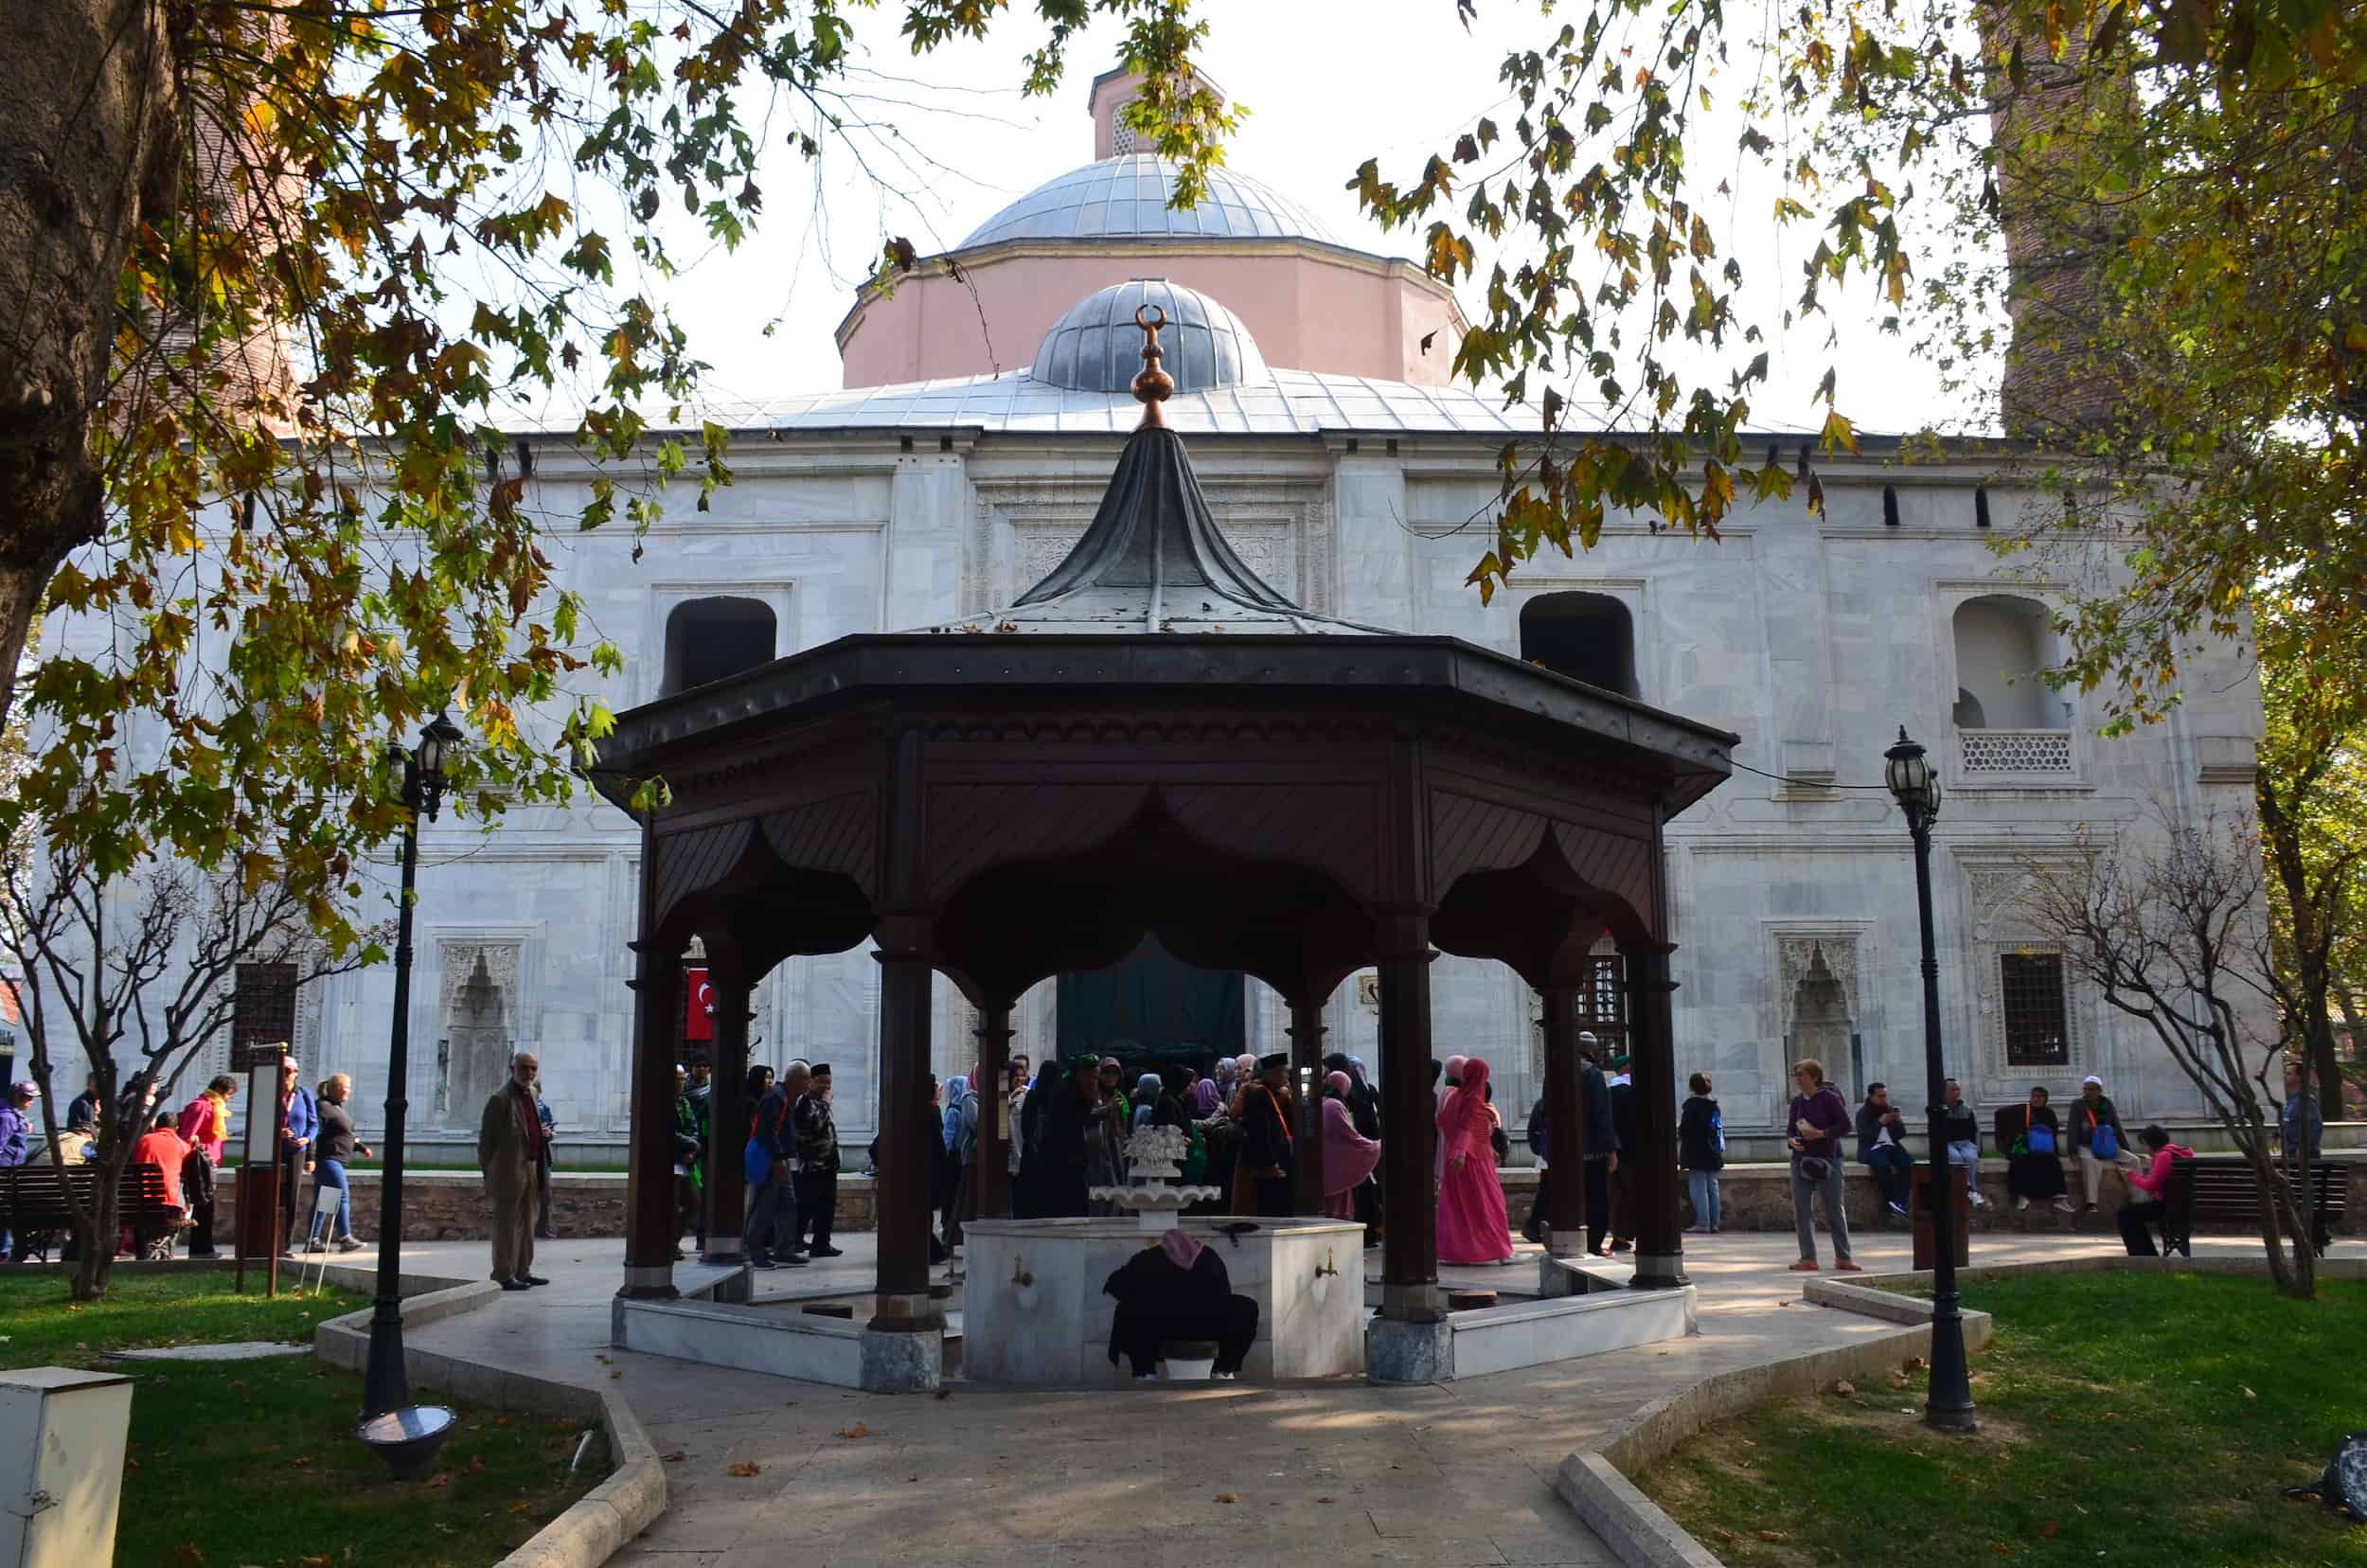 Green Mosque in Bursa, Turkey